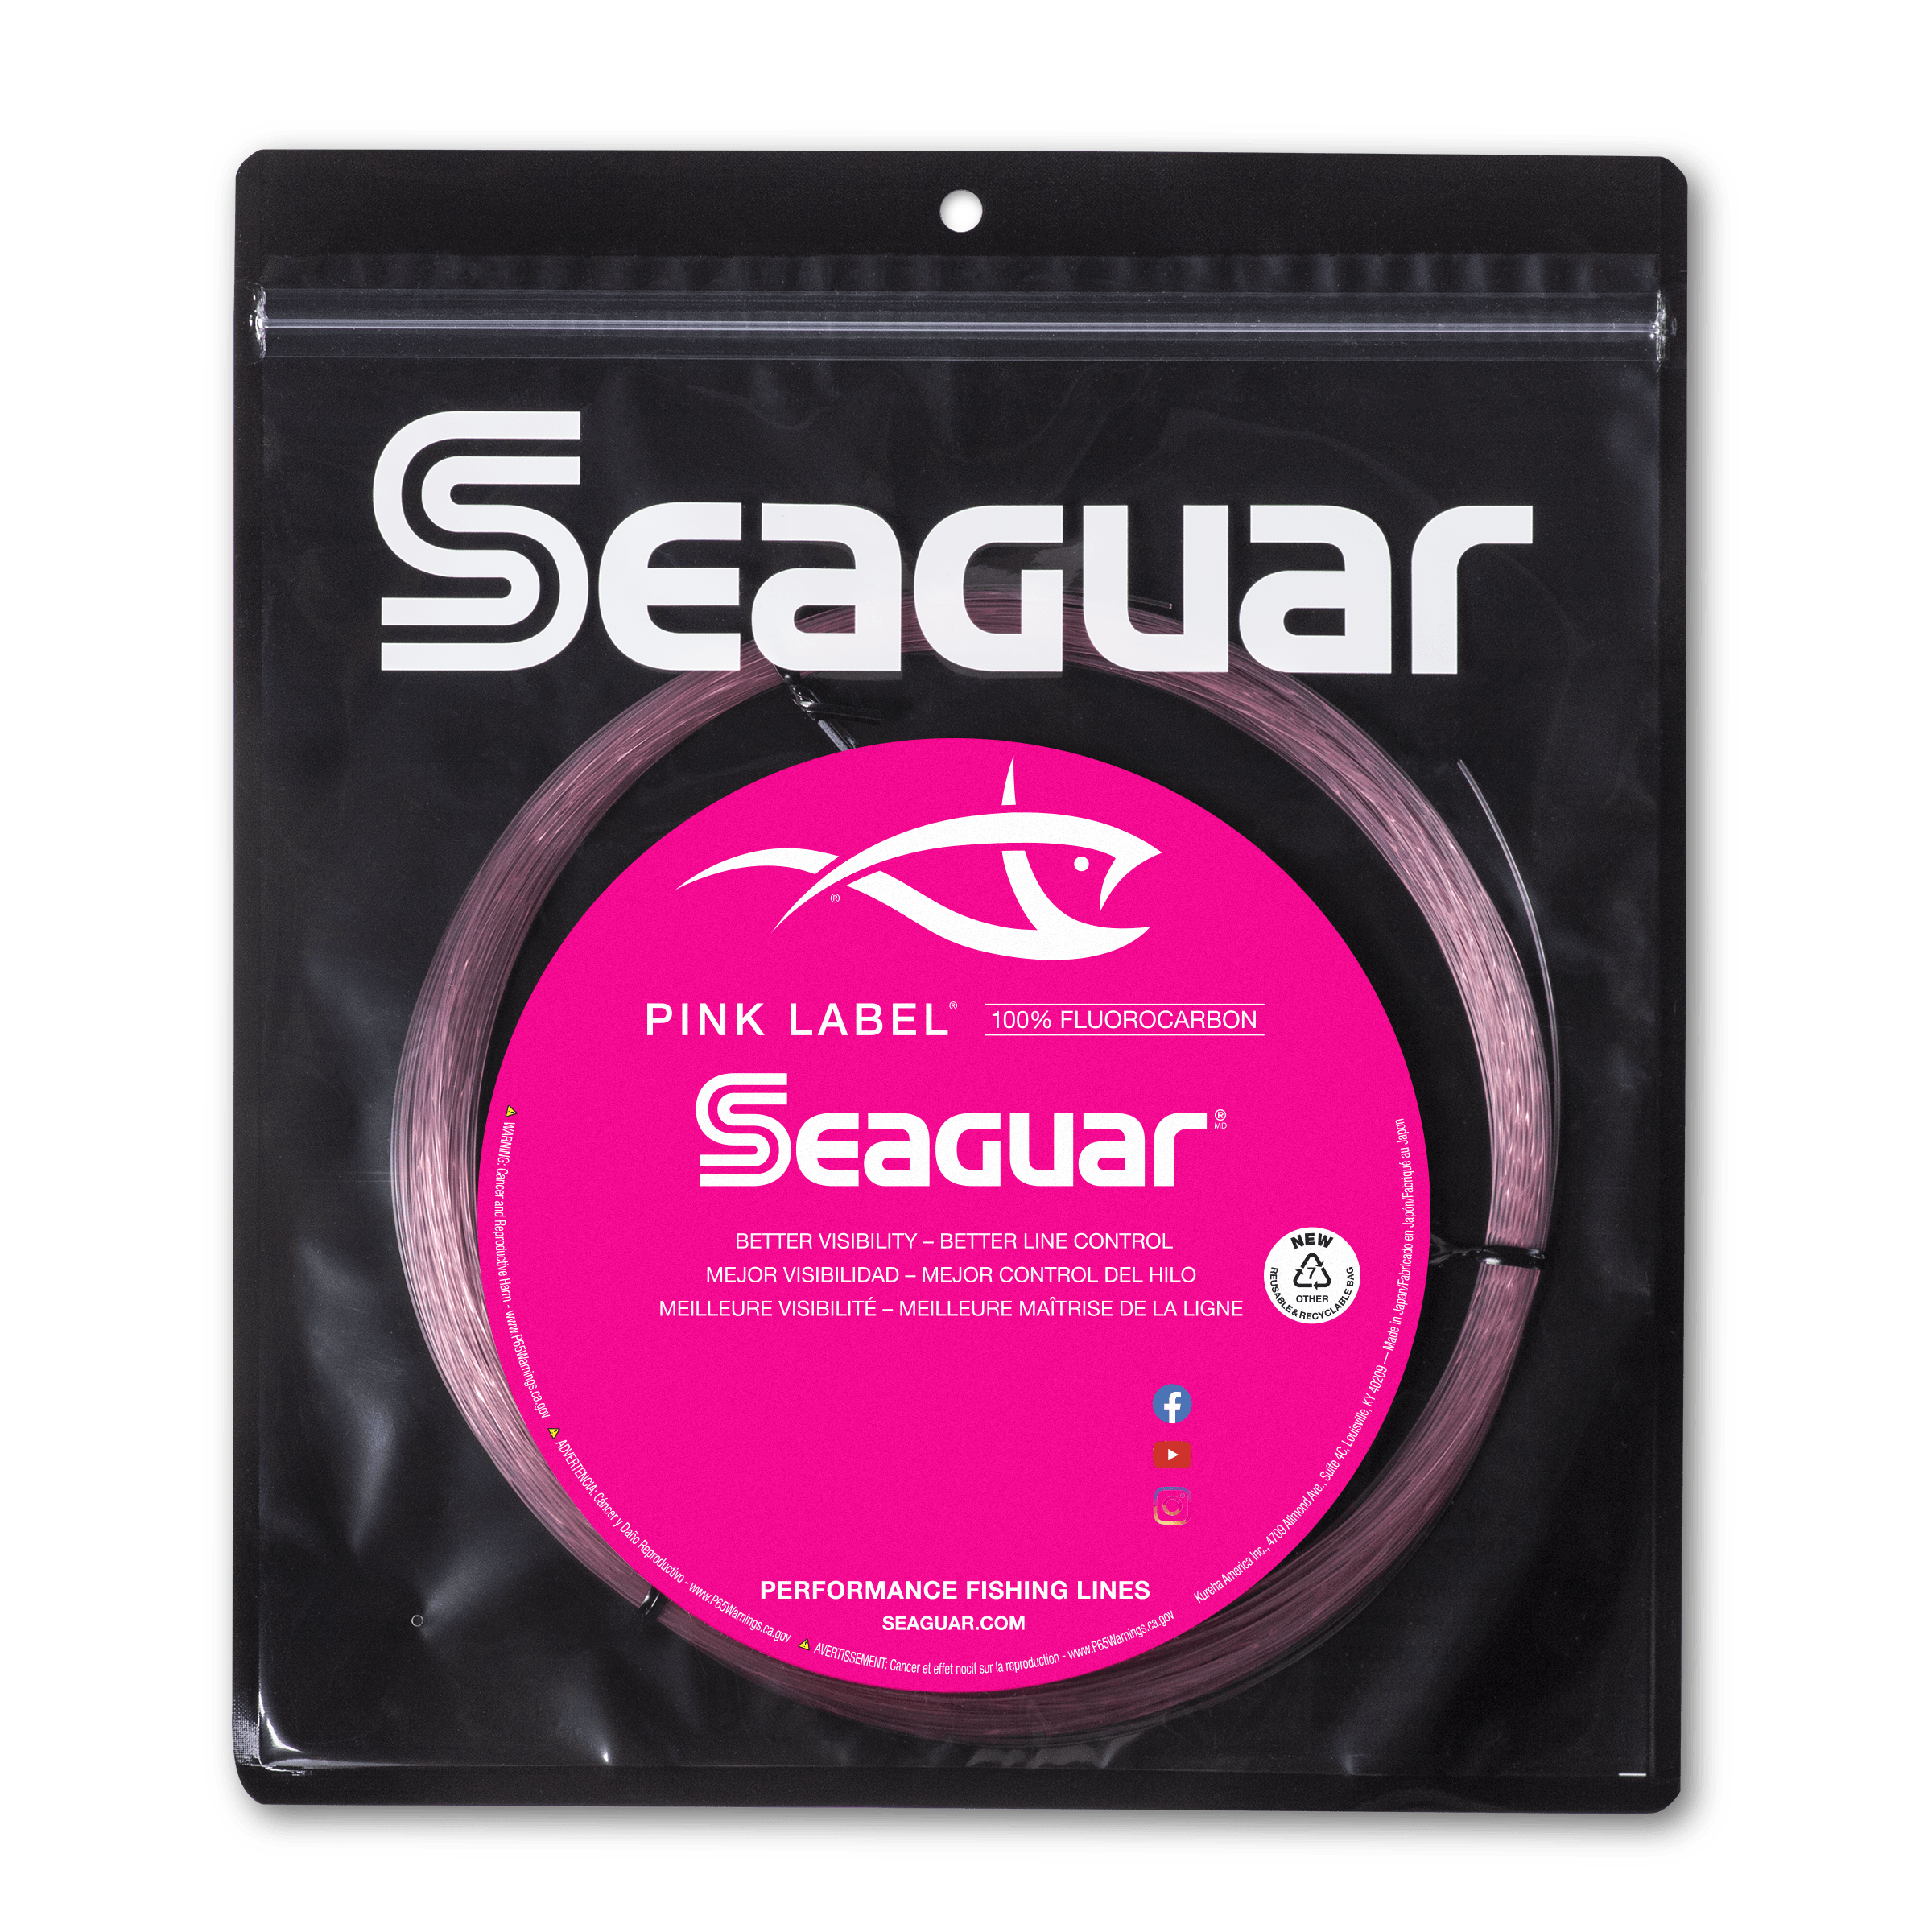 Seaguar Blue Label Saltwater Fluorocarbon Line, 60 lb, 25 yds